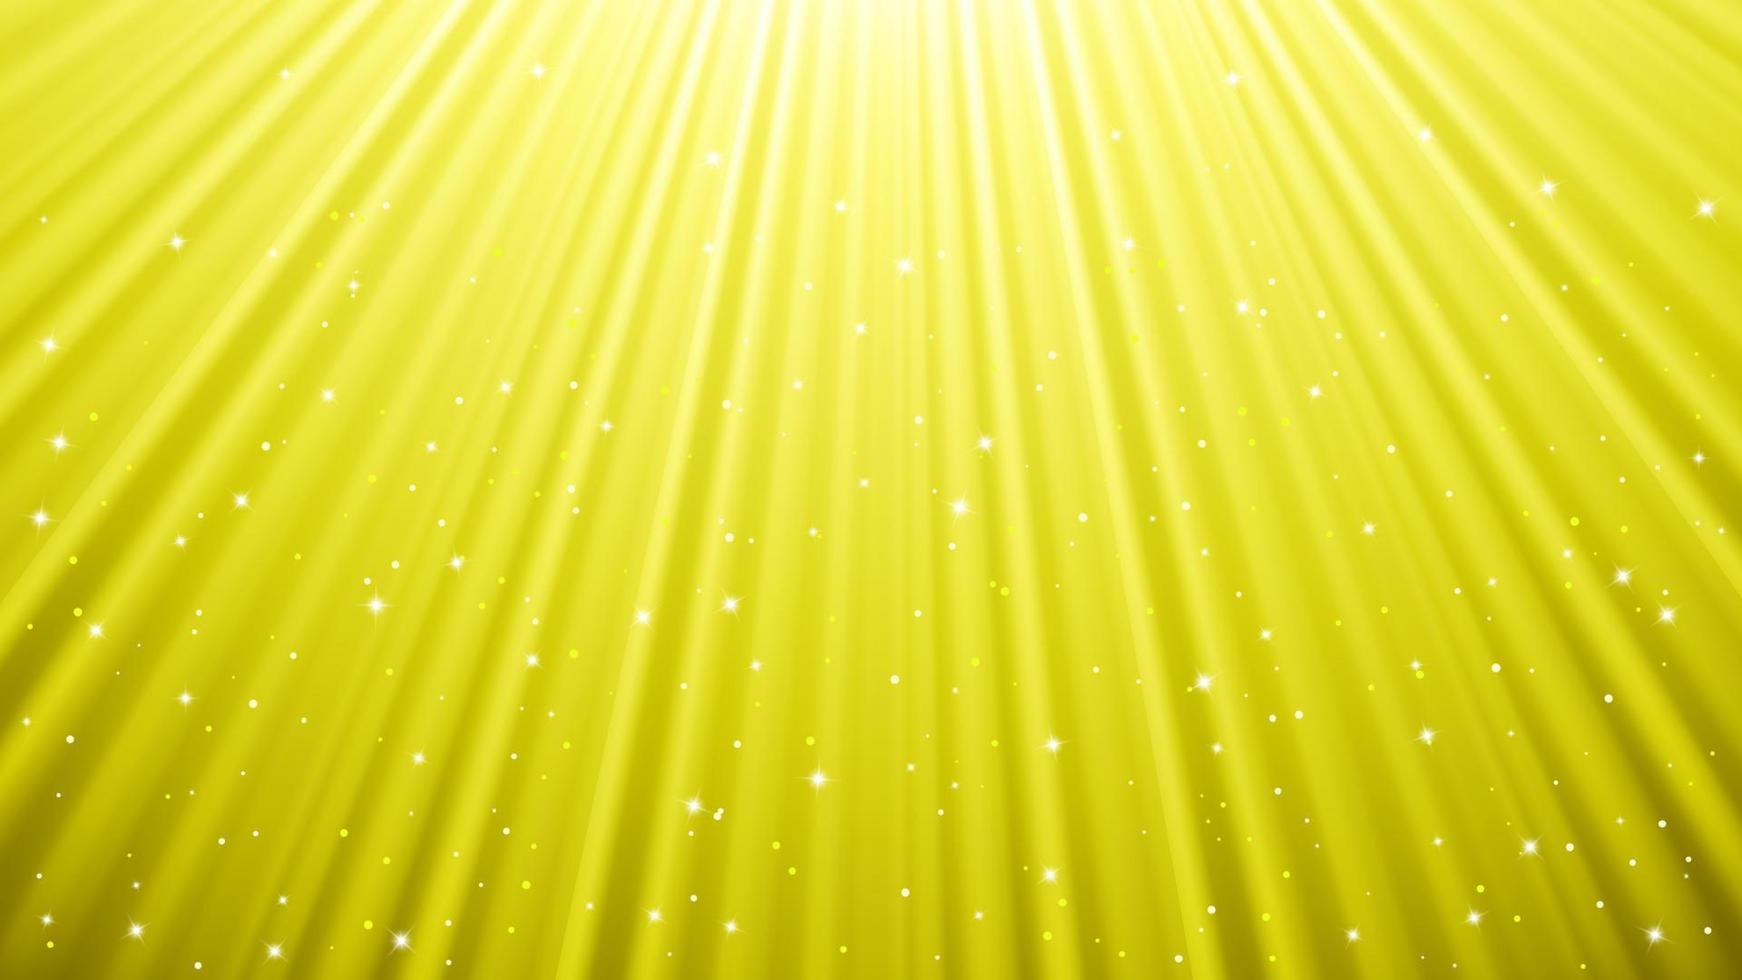 Sonnenlicht strahlt Hintergrund mit Lichteffekten aus. gelber hintergrund mit strahlendem licht. Vektor-Illustration vektor